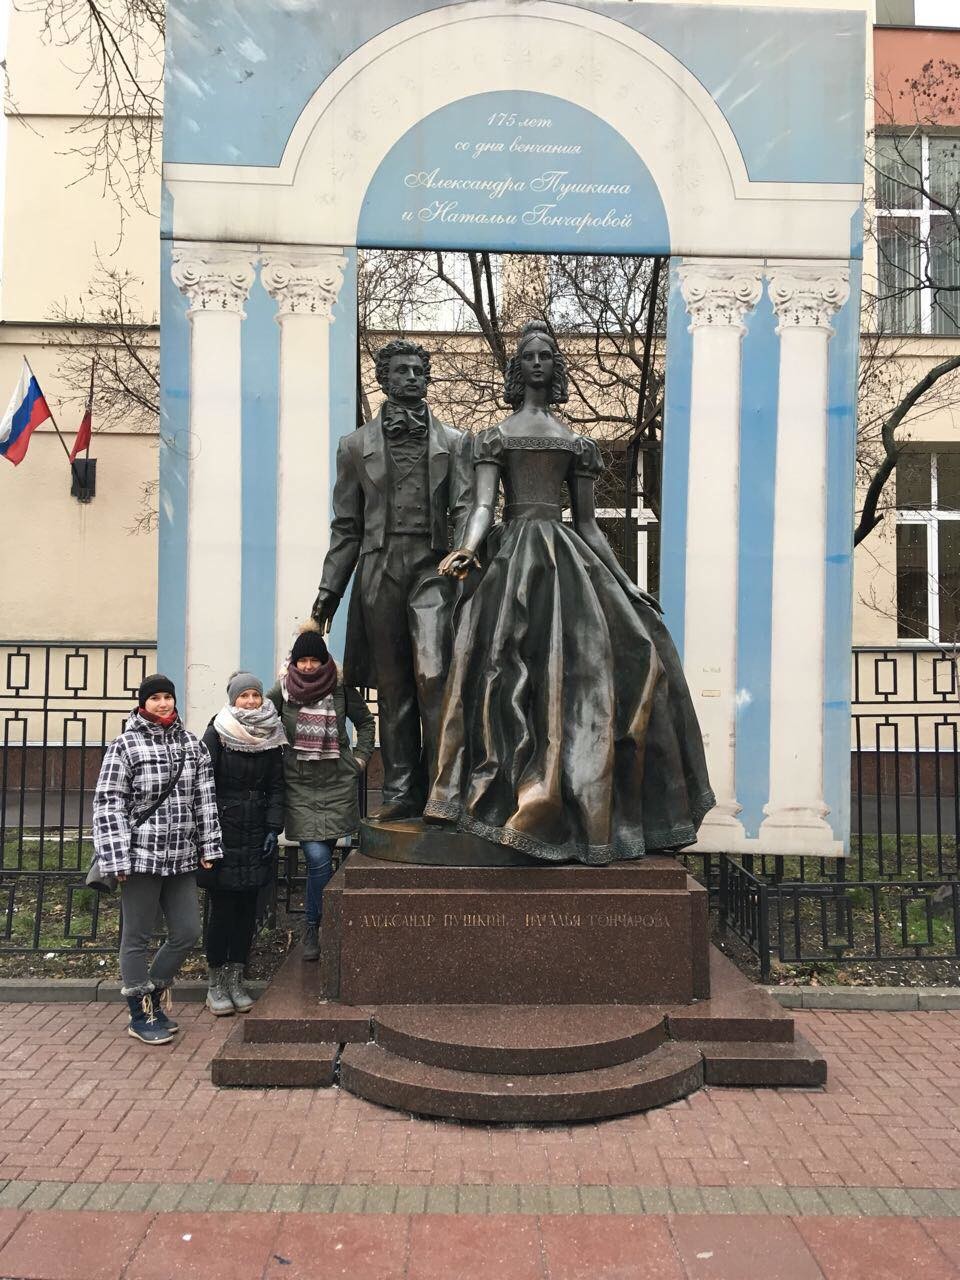 Slovenke pod spomenikom Aleksandra Puškina in Natalije Gončarove na Arbatu